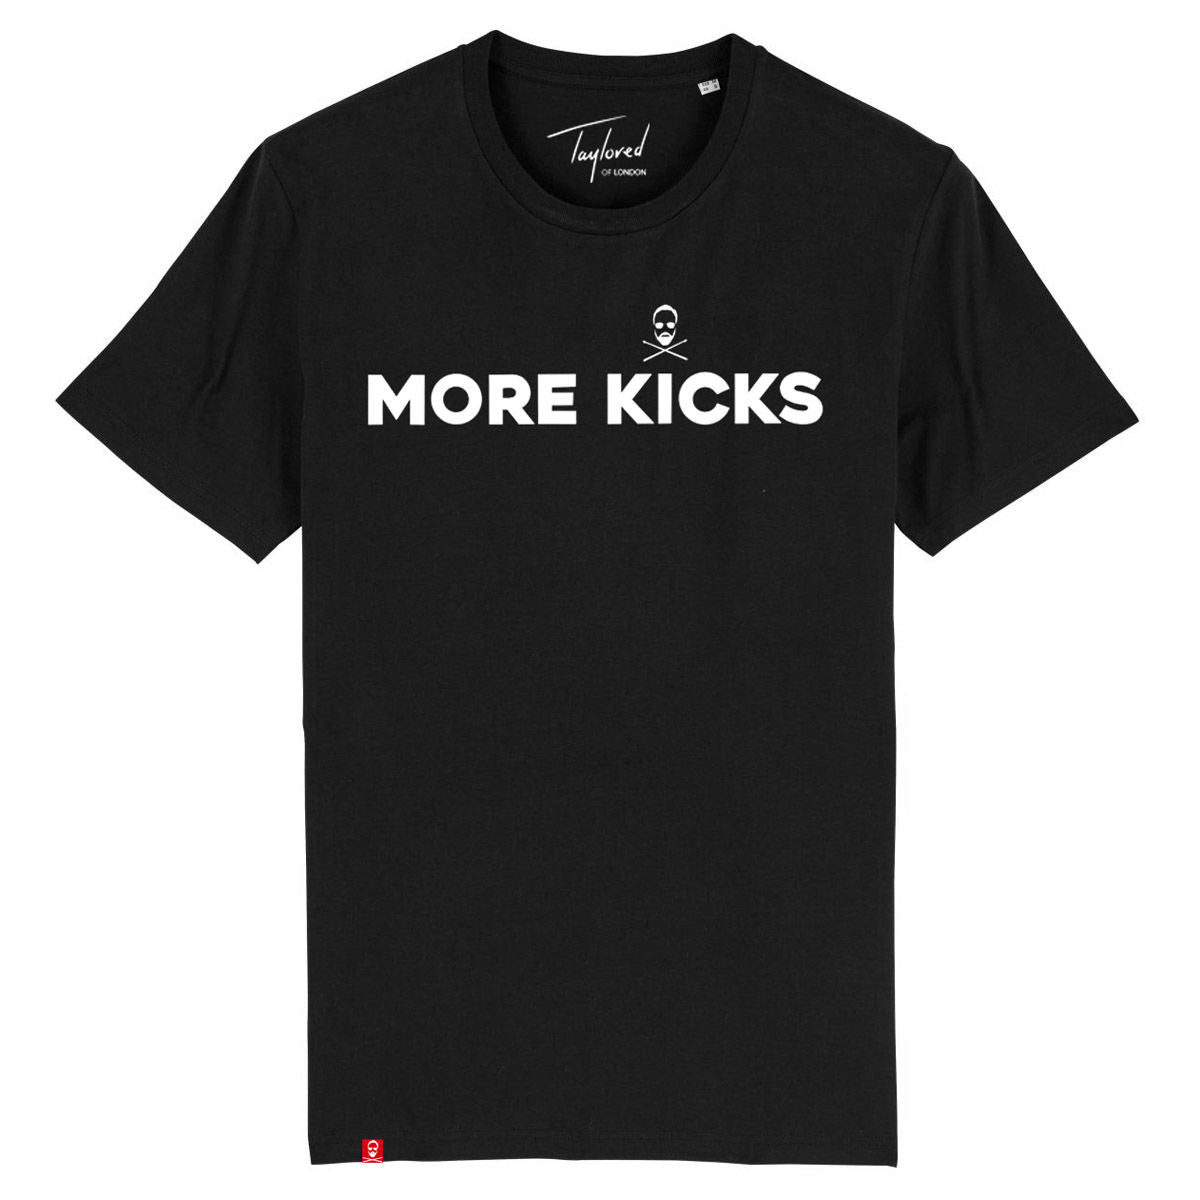 Roger Taylor - More Kicks Black T-Shirt.